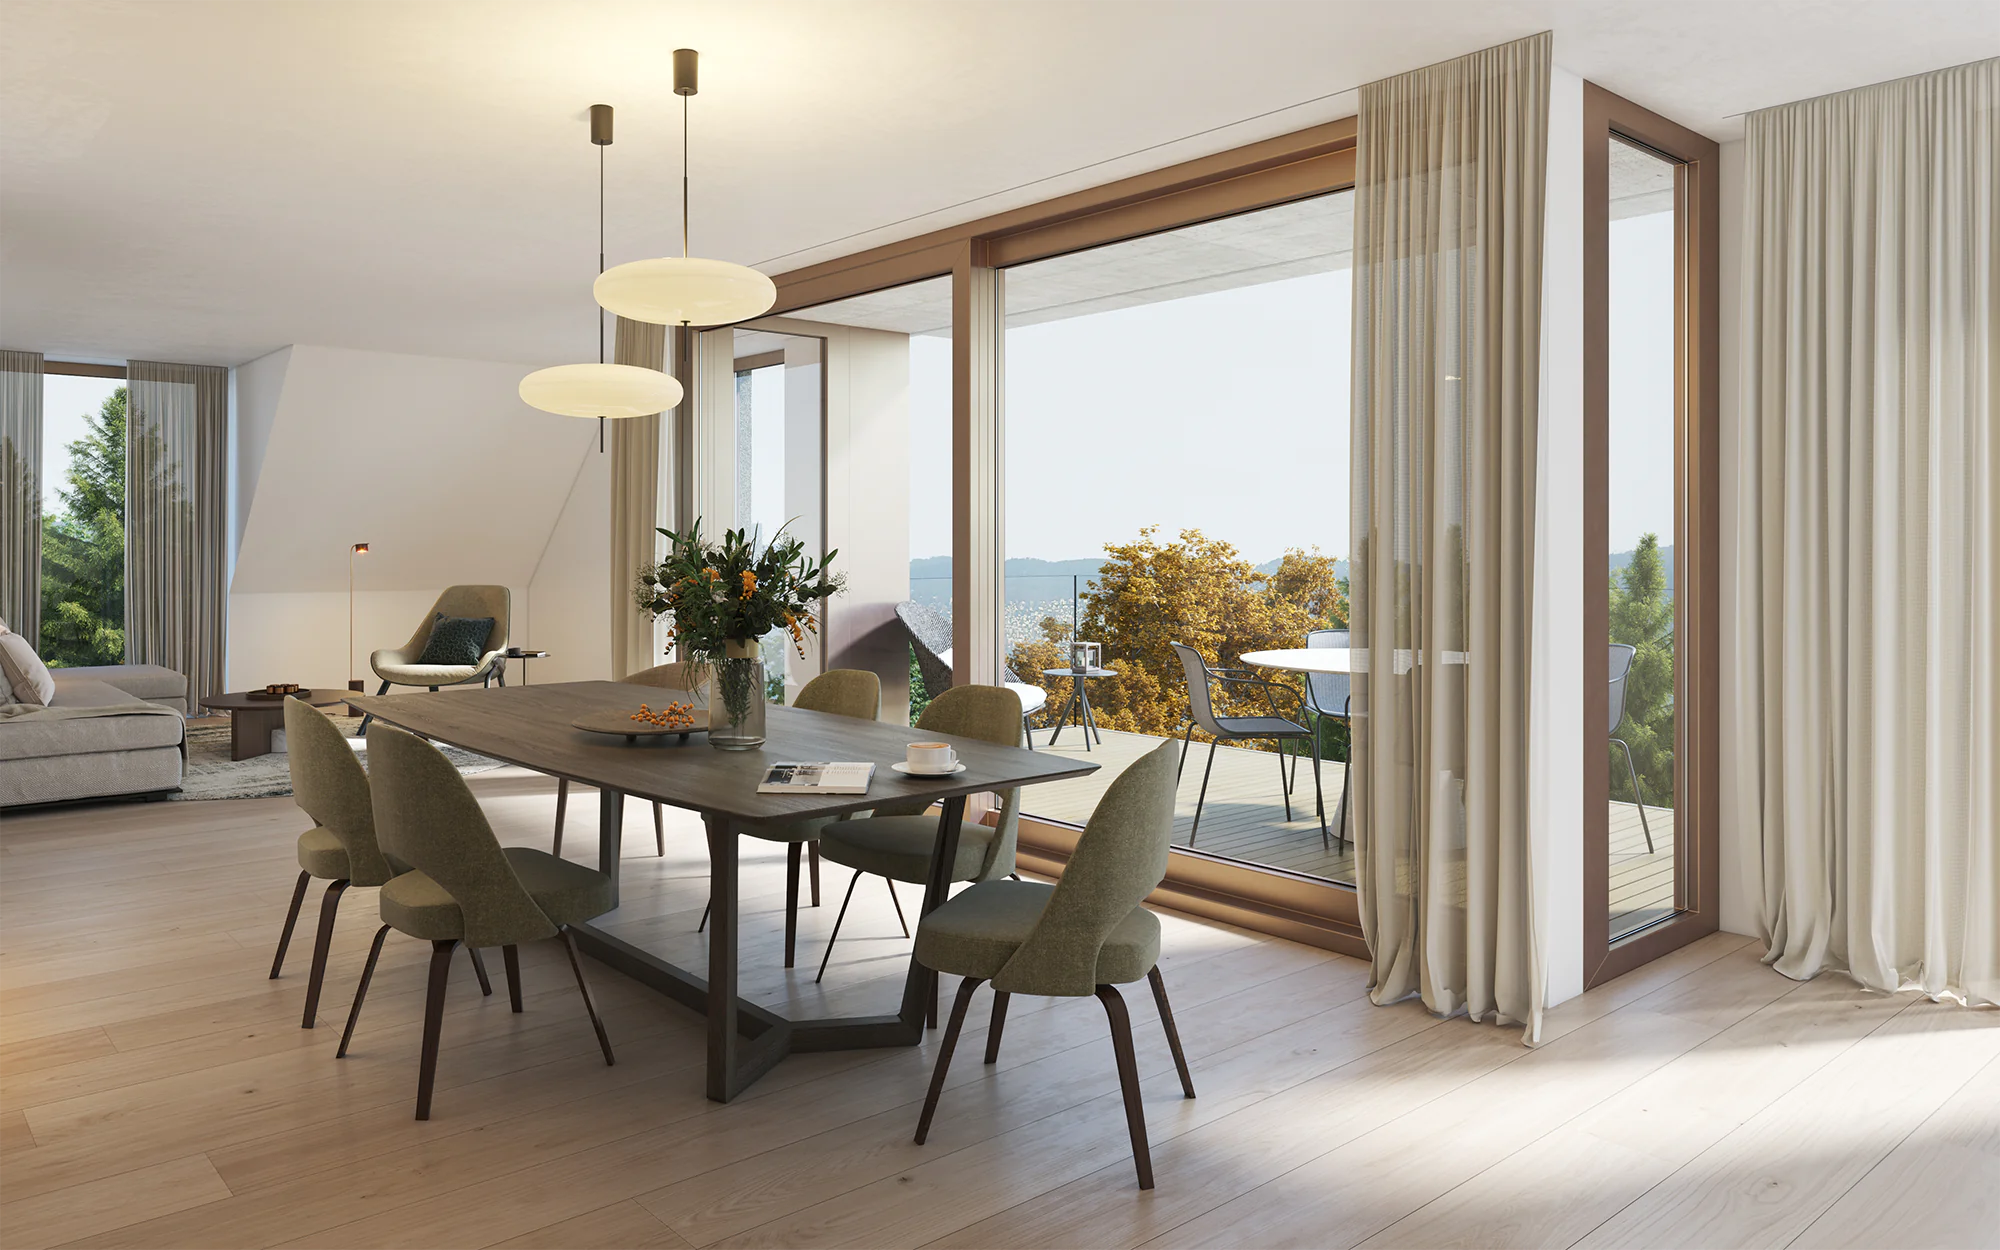 Architectural-rendering-rueslikon-dining-room-interior